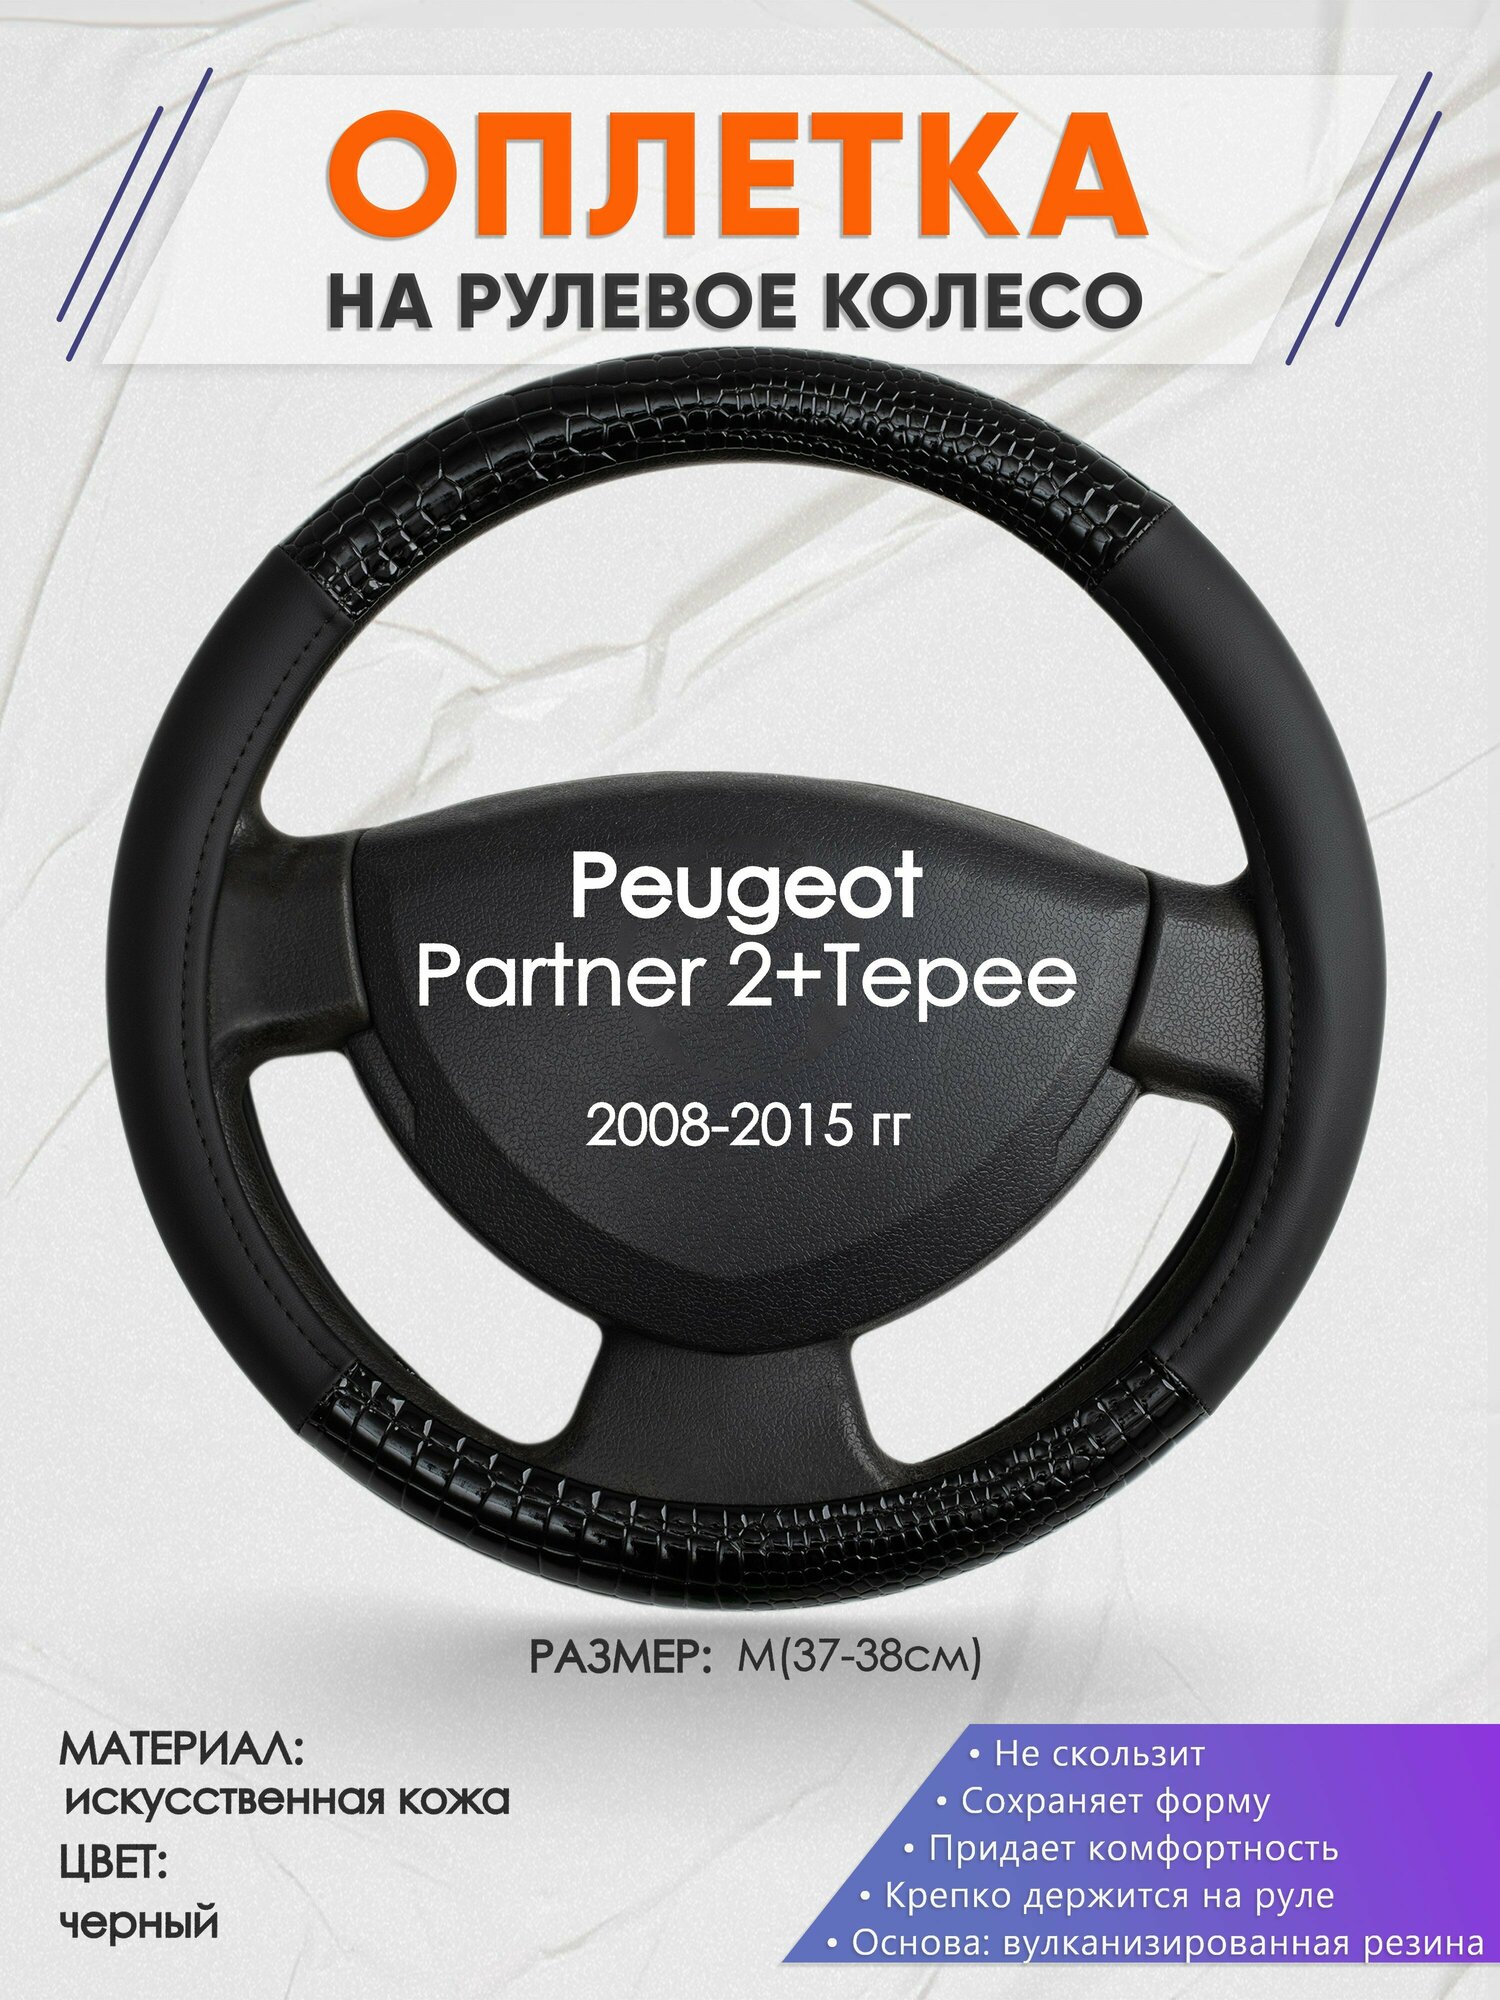 Оплетка на руль для Peugeot Partner 2+Tepee(Пежо Партнер 2) 2008-2015, M(37-38см), Искусственная кожа 83